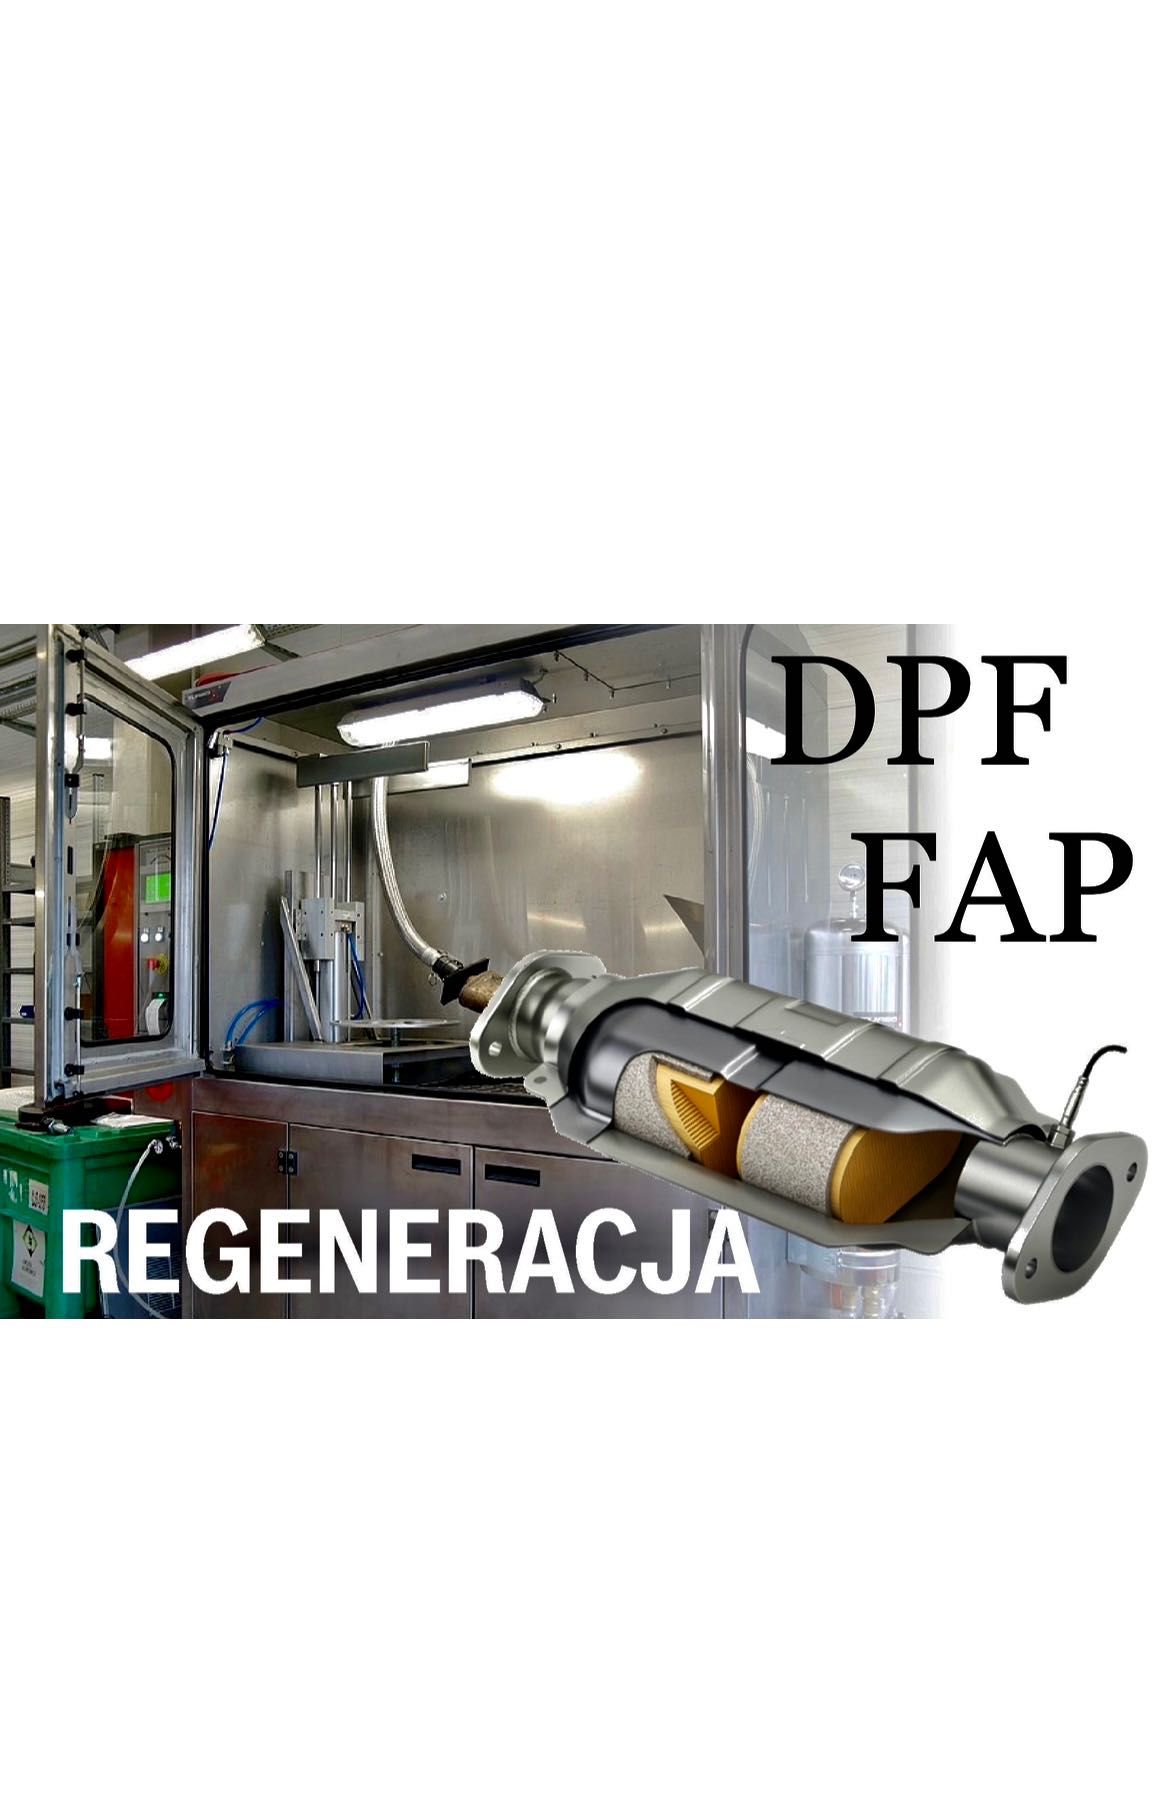 Regeneracja czyszczenie filtrów cząstek stałych DPF/ FAP/ EURO6  399zł